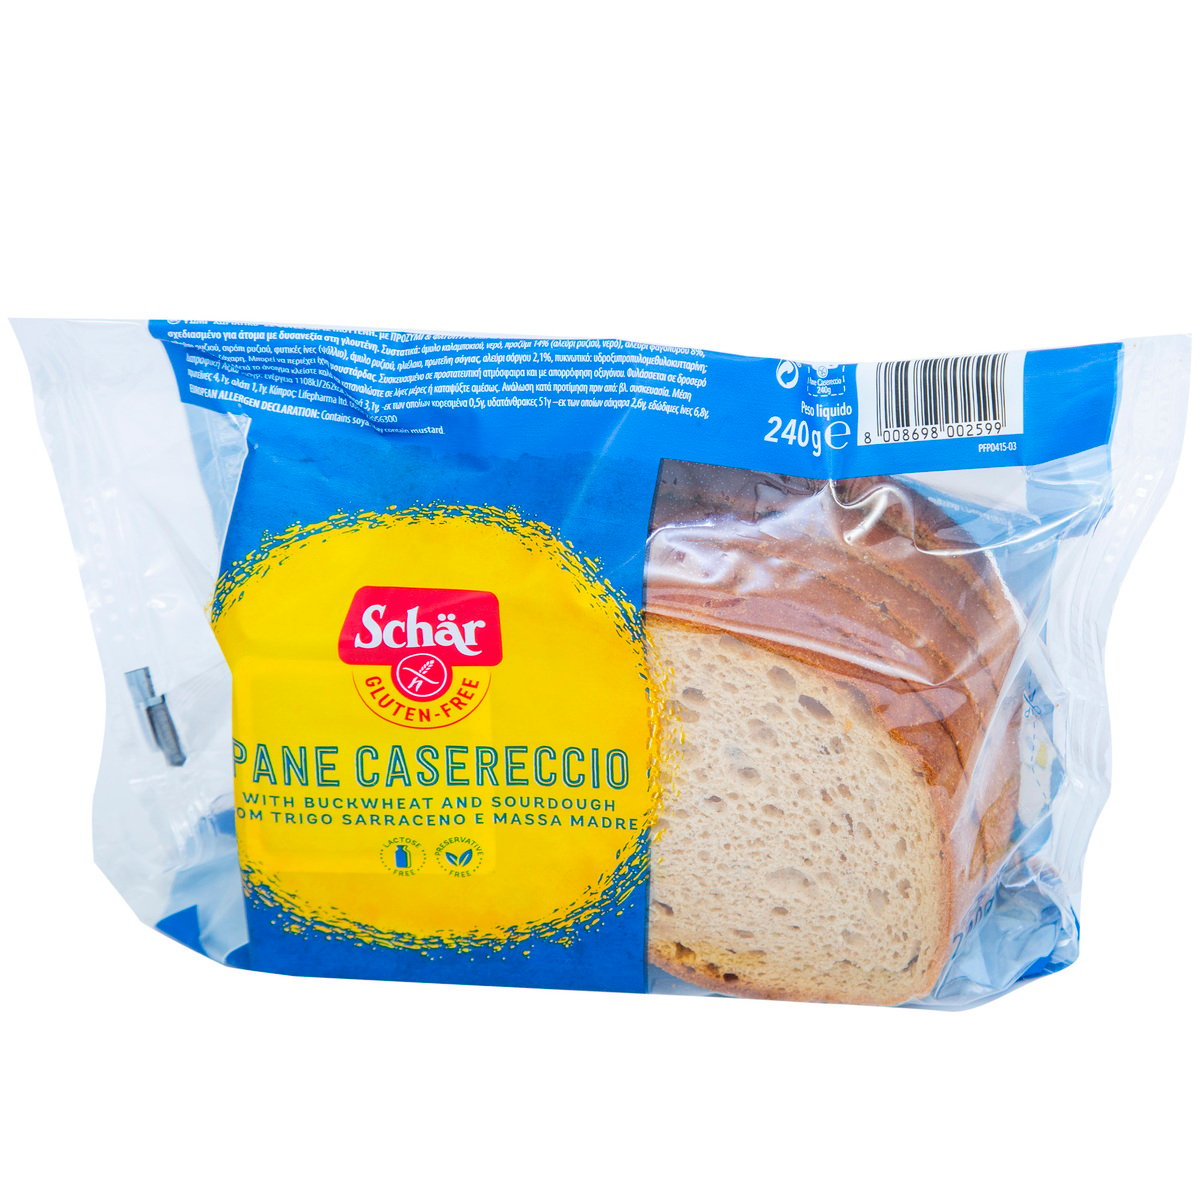 Schar Pane Casereccio Gluten Free 240 g